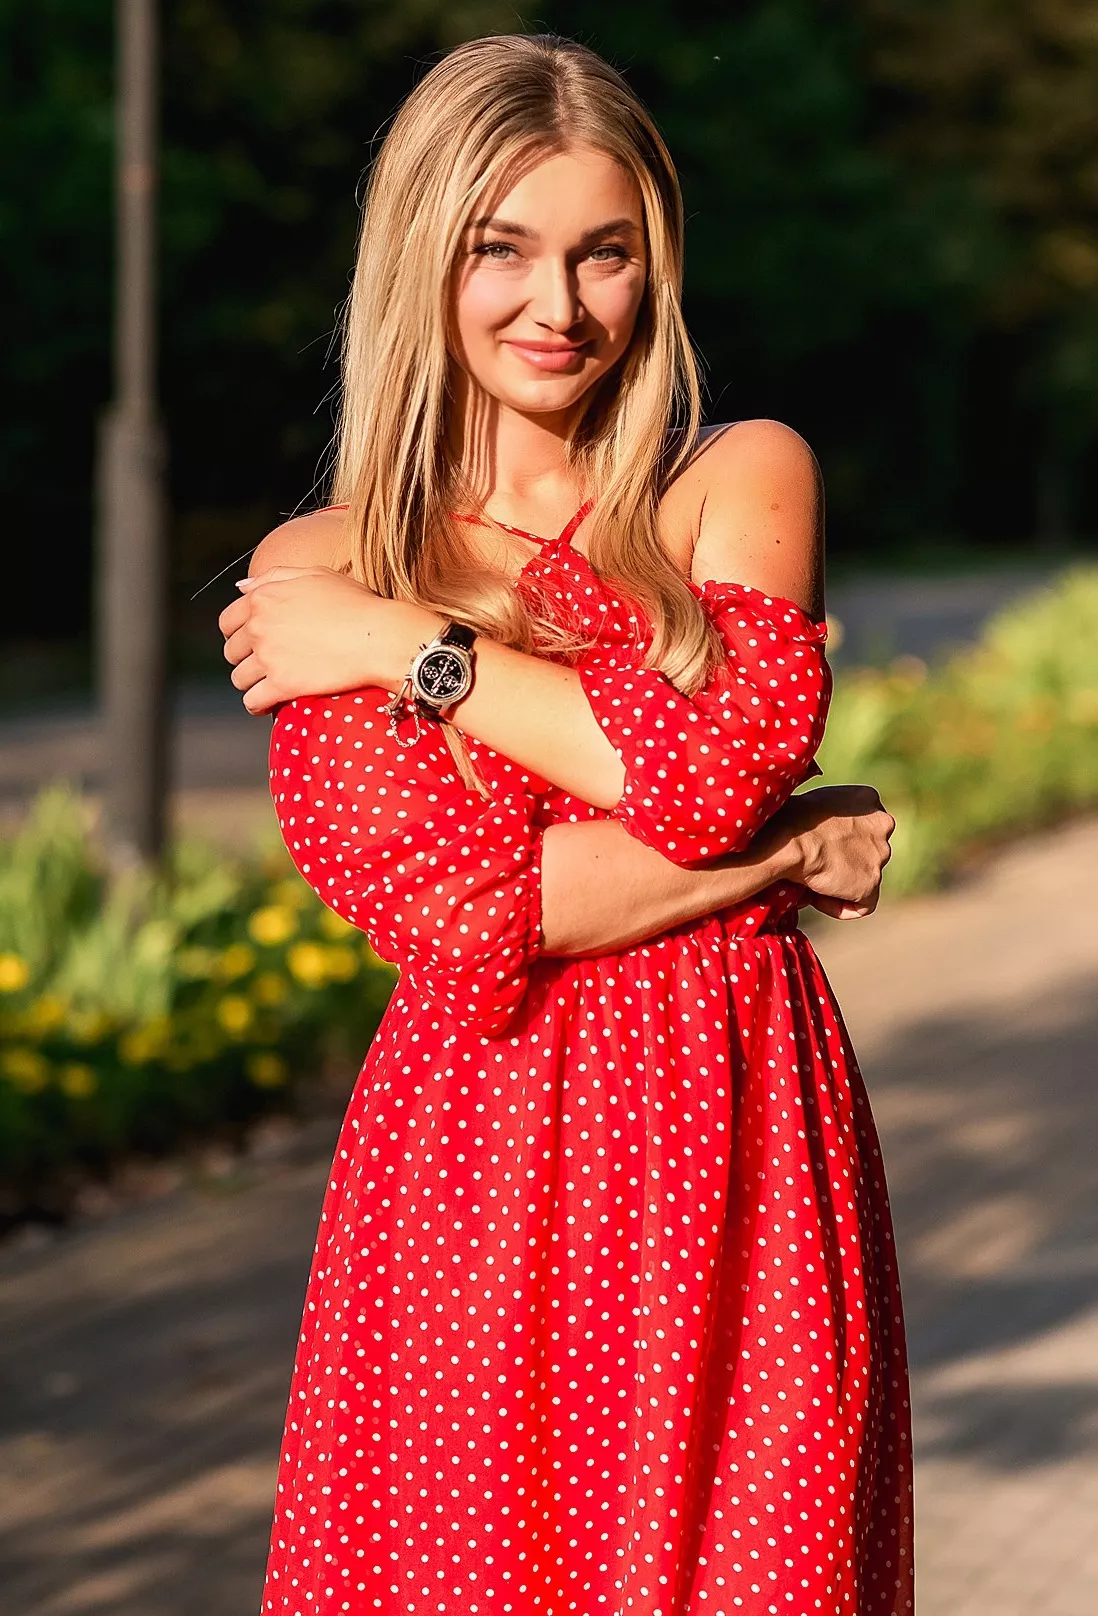 Rencontre avec une belle femme russe, Margarita 32 ans